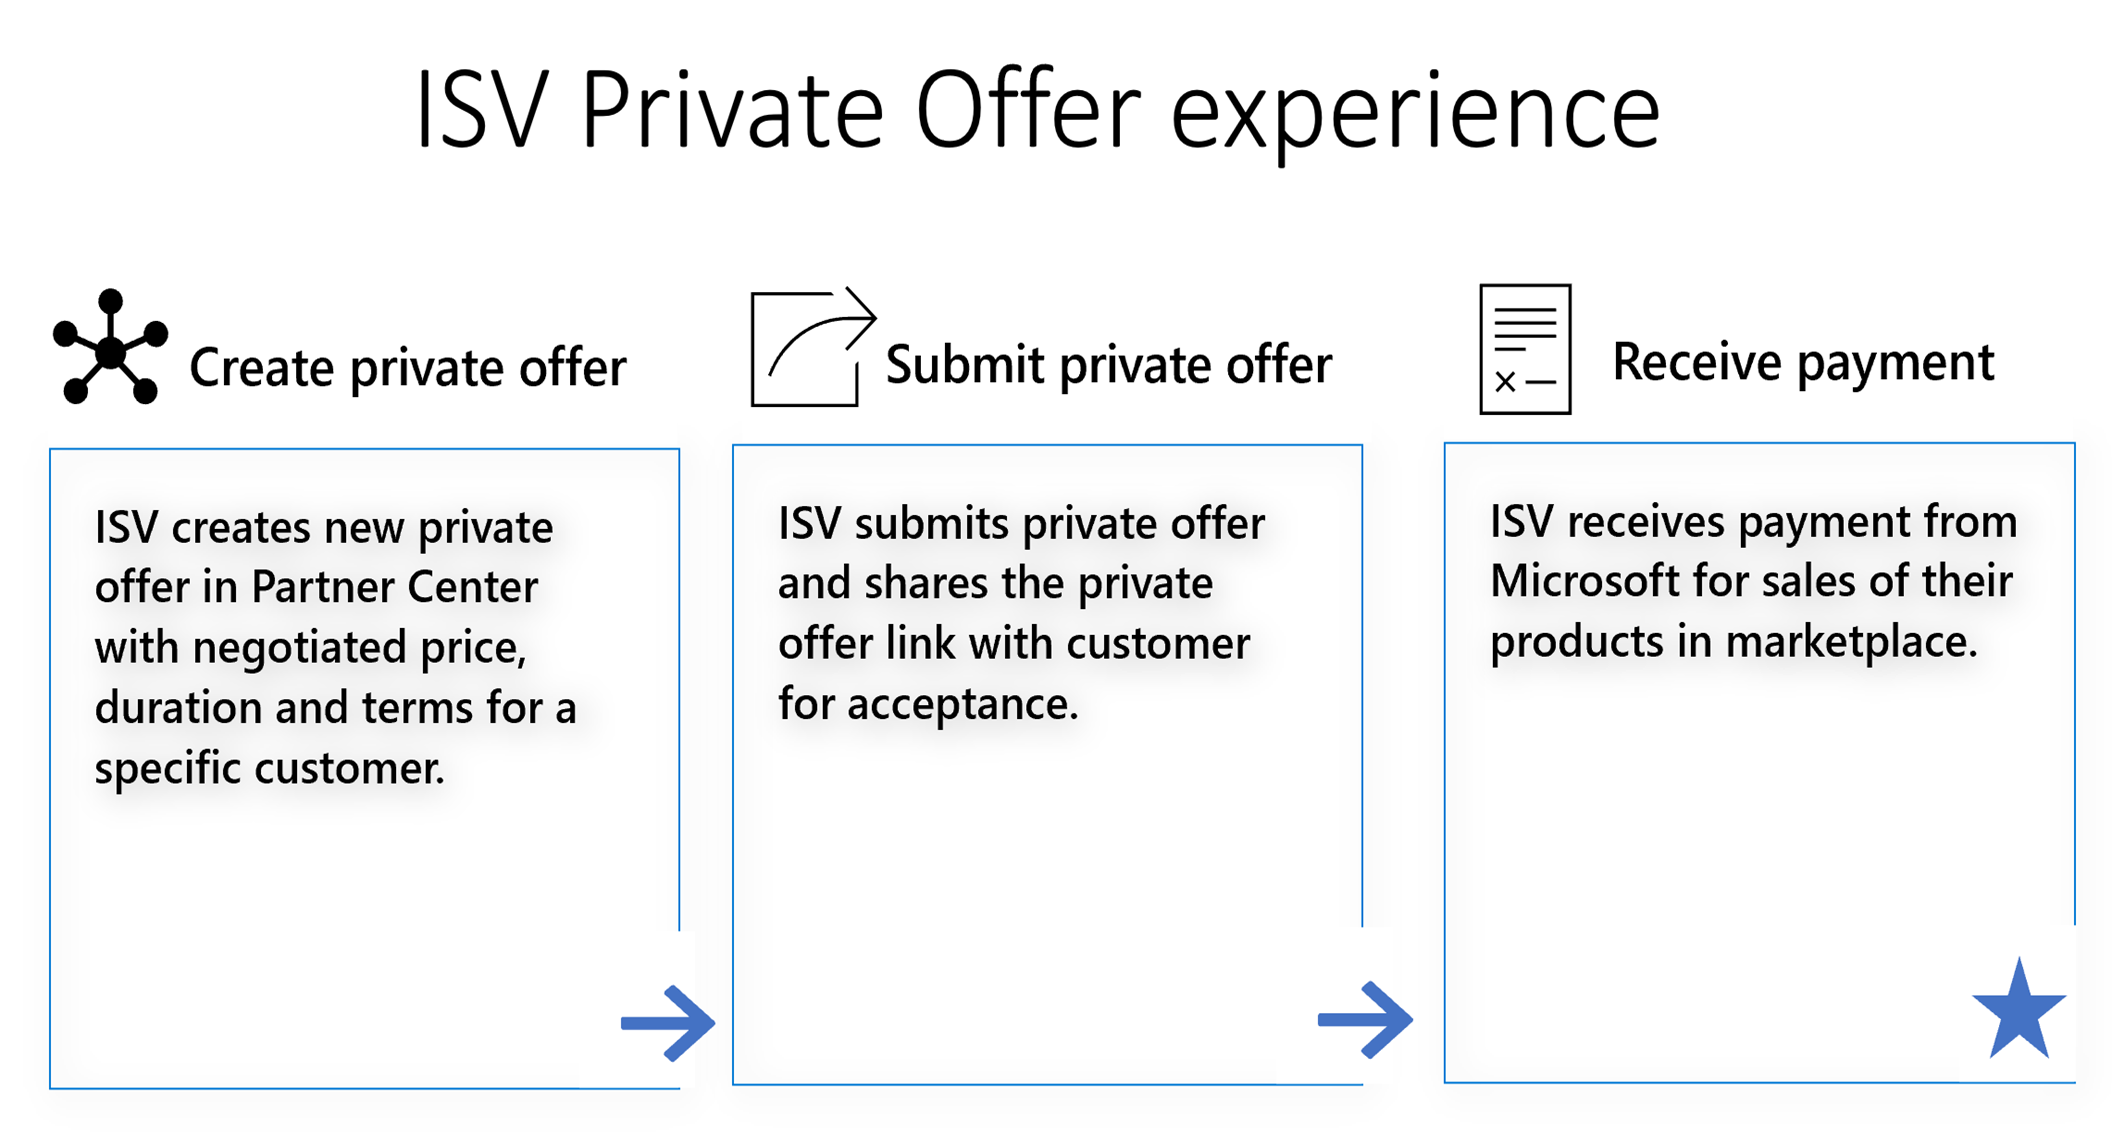 Muestra la progresión de la experiencia de ofertas privadas de ISV.